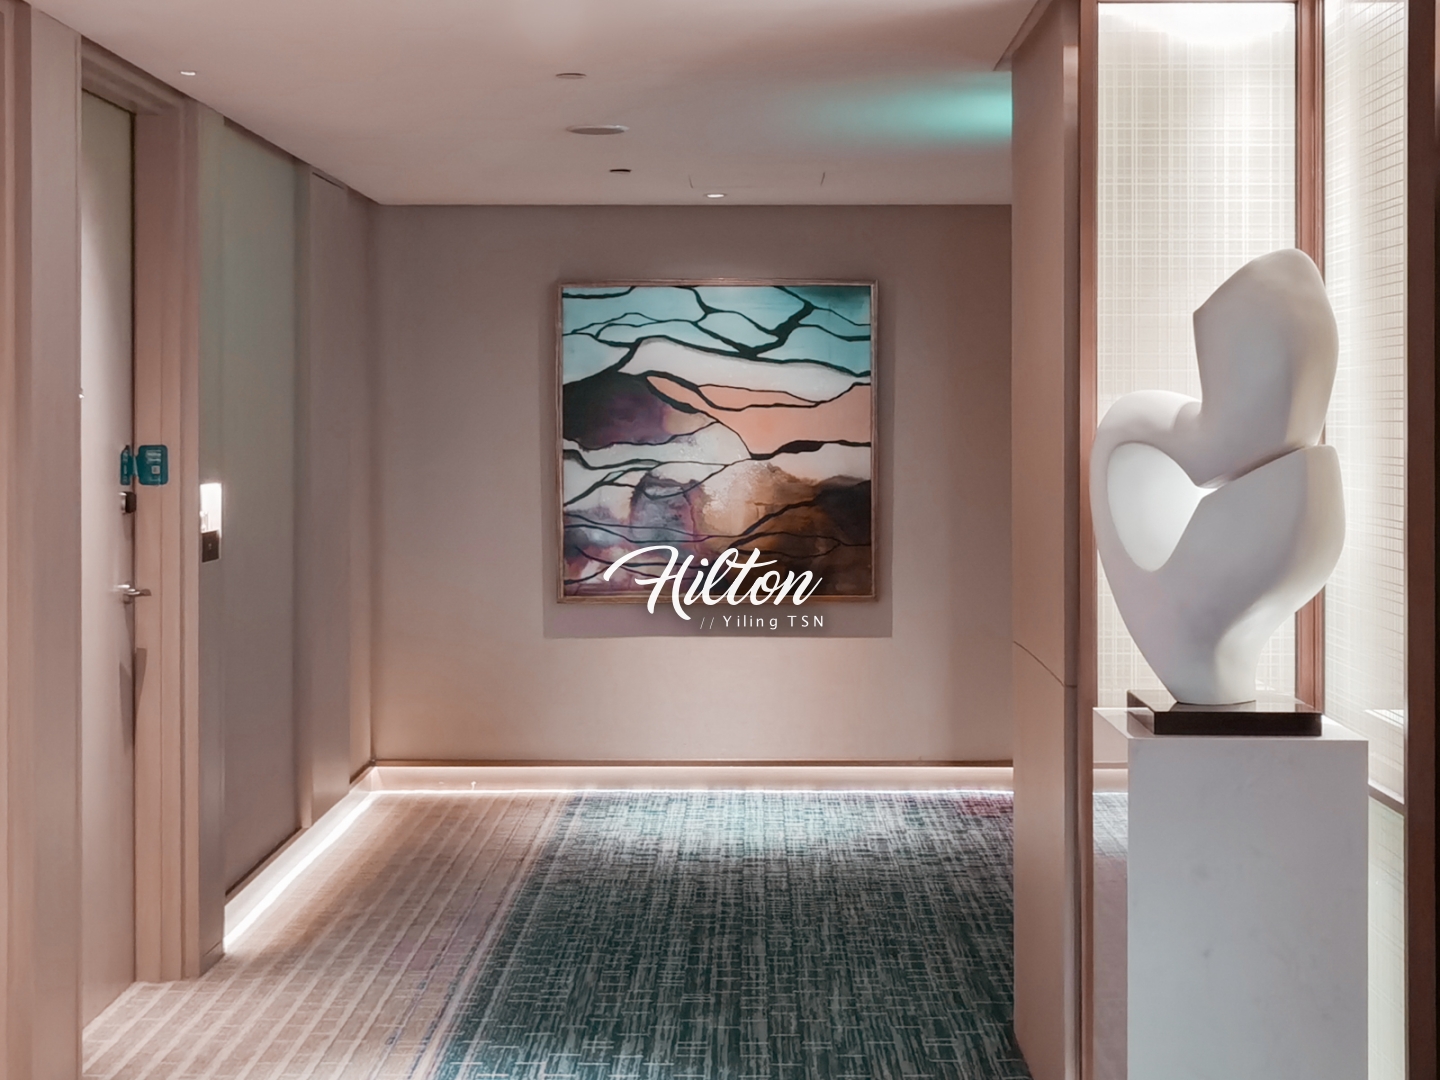 台北新板希爾頓酒店 Hilton Taipei Sinban 新北最美高空無邊際泳池